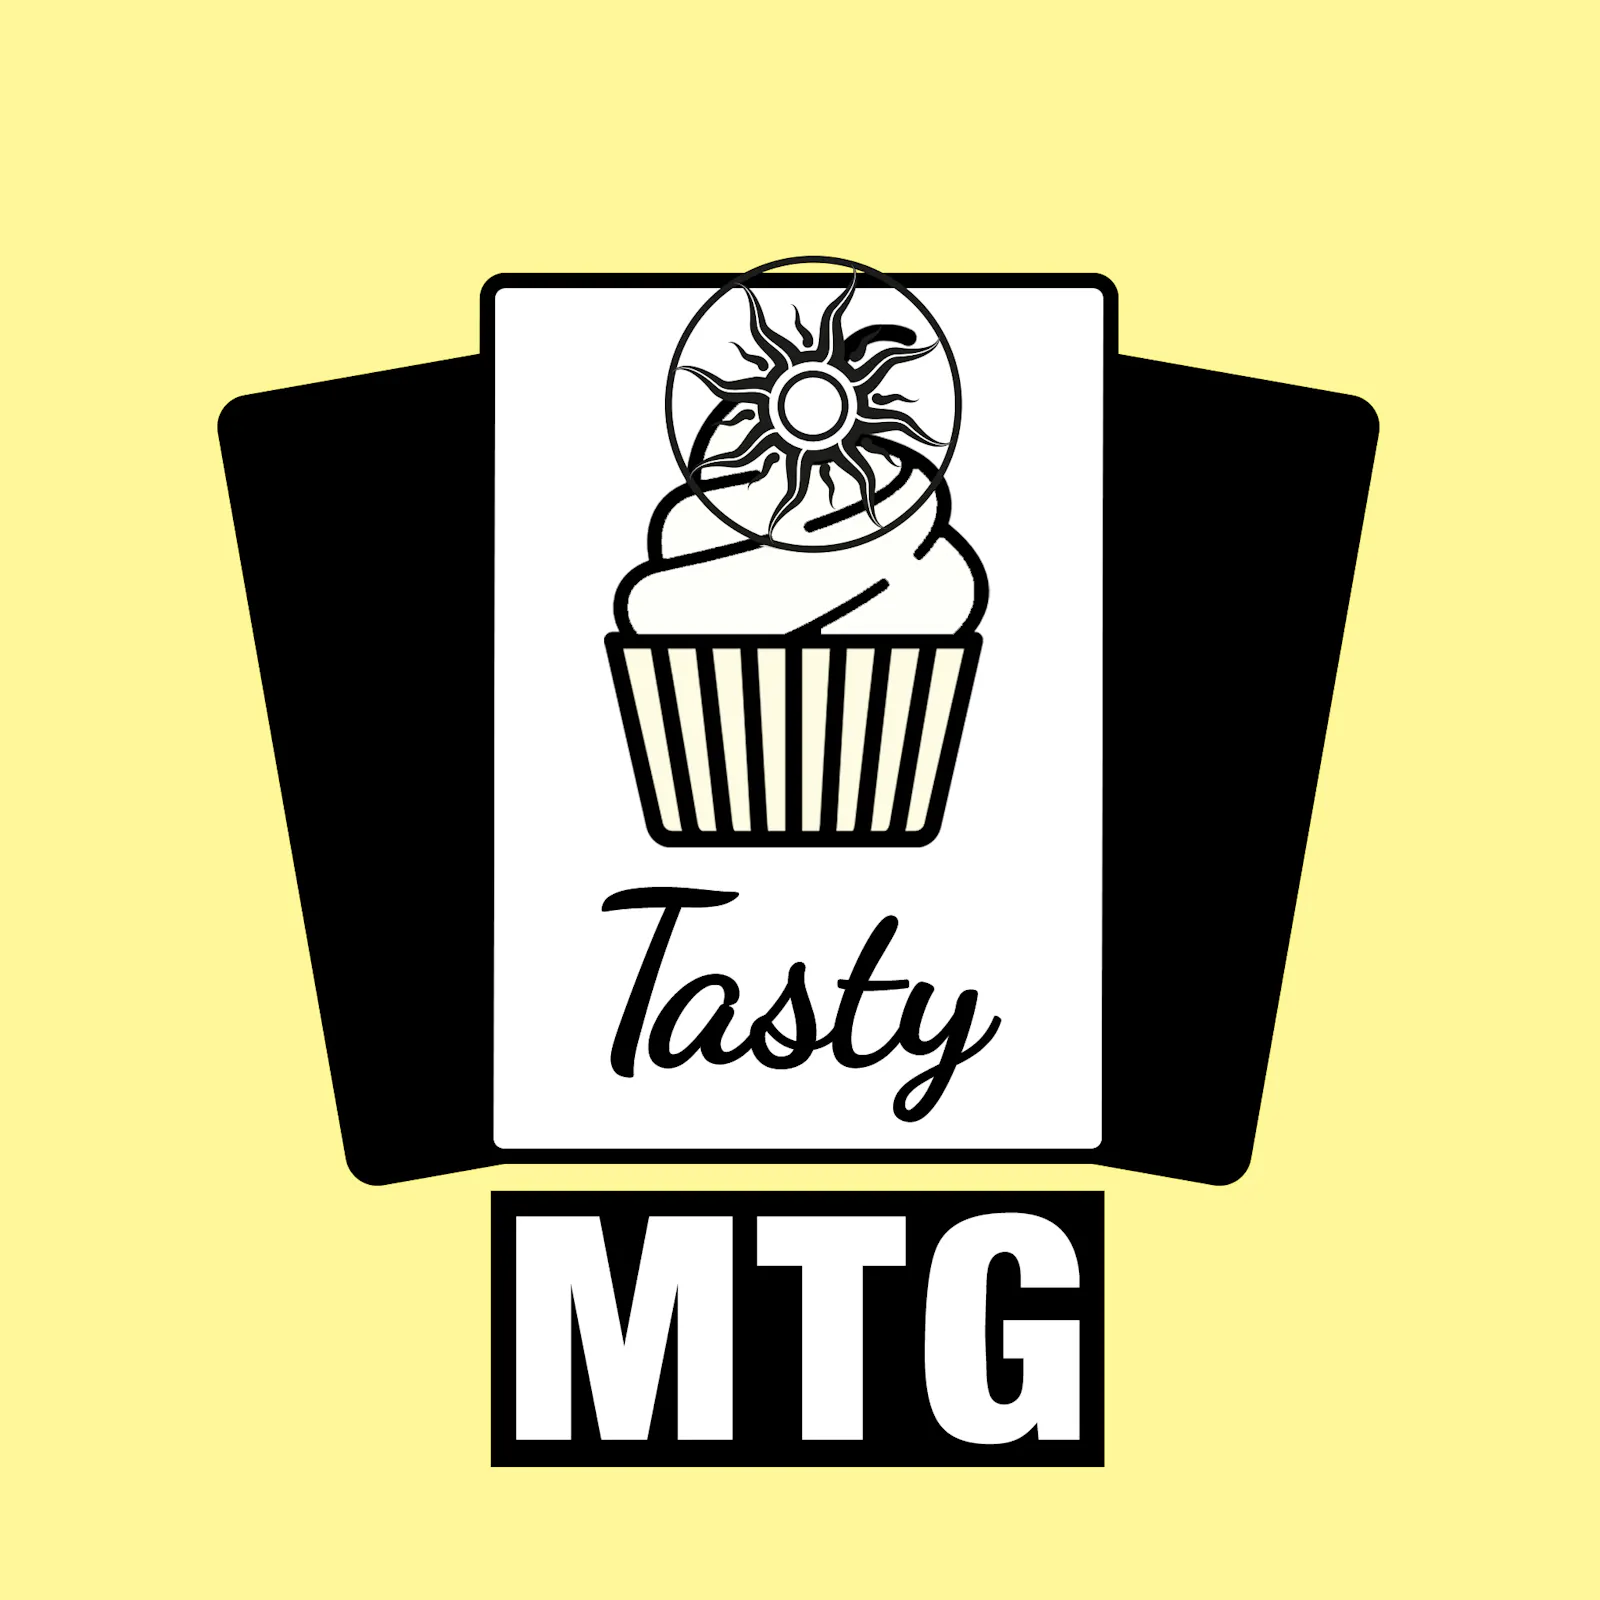 Das Logo zur aktuellen Folge: Der Tasty-Muffin ist ganz weiß und hat als Schmuck das Logo des Commander Kompass Podcasts